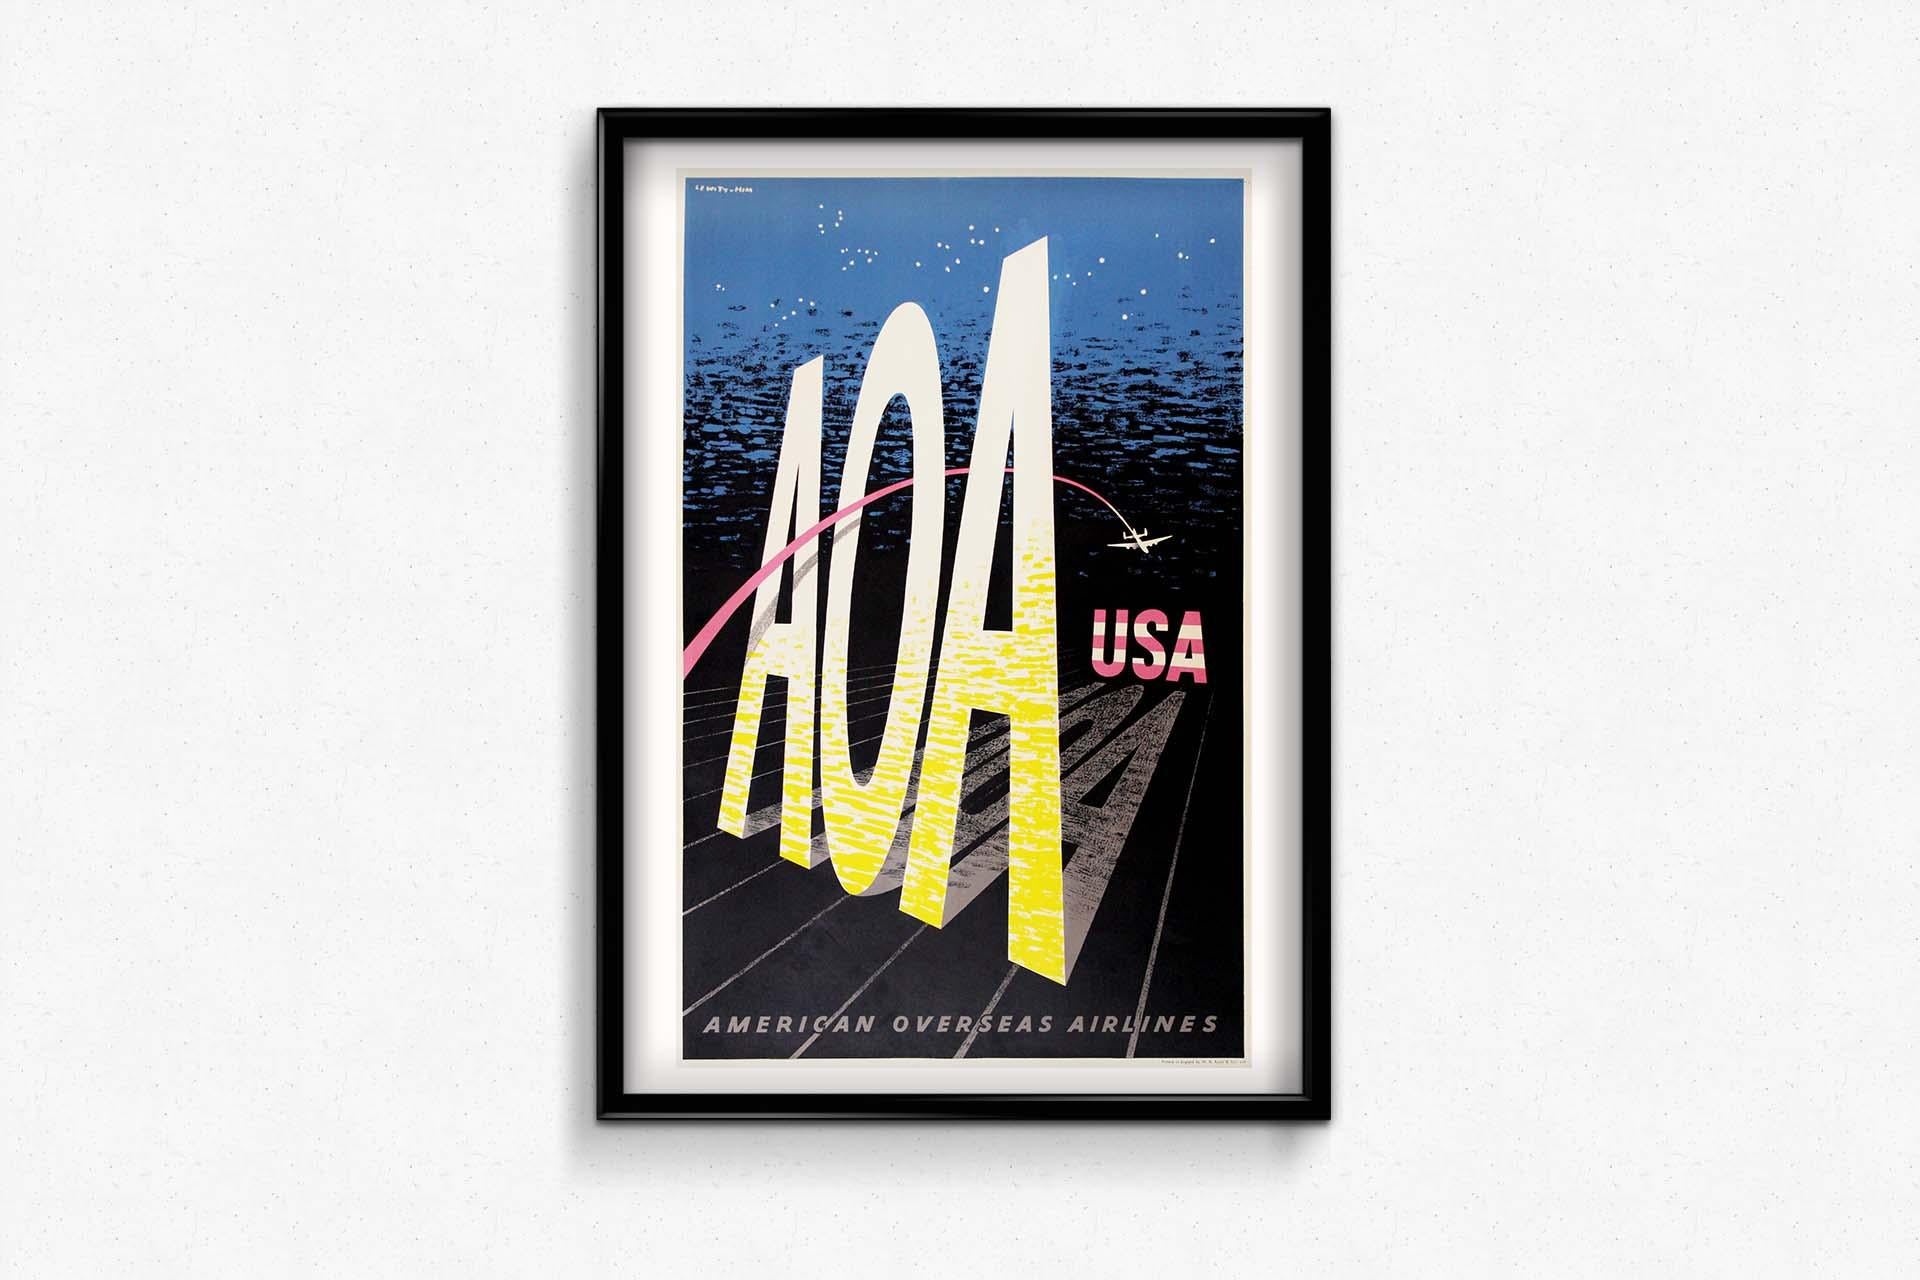 Das Originalplakat von Lewitt-Him für AOA (American Overseas Airlines) aus dem Jahr 1950 entführt Sie in die pulsierende Welt des amerikanischen Reisens. Dieses atemberaubende Vintage-Kunstwerk lädt Sie zu einer visuellen Reise durch die